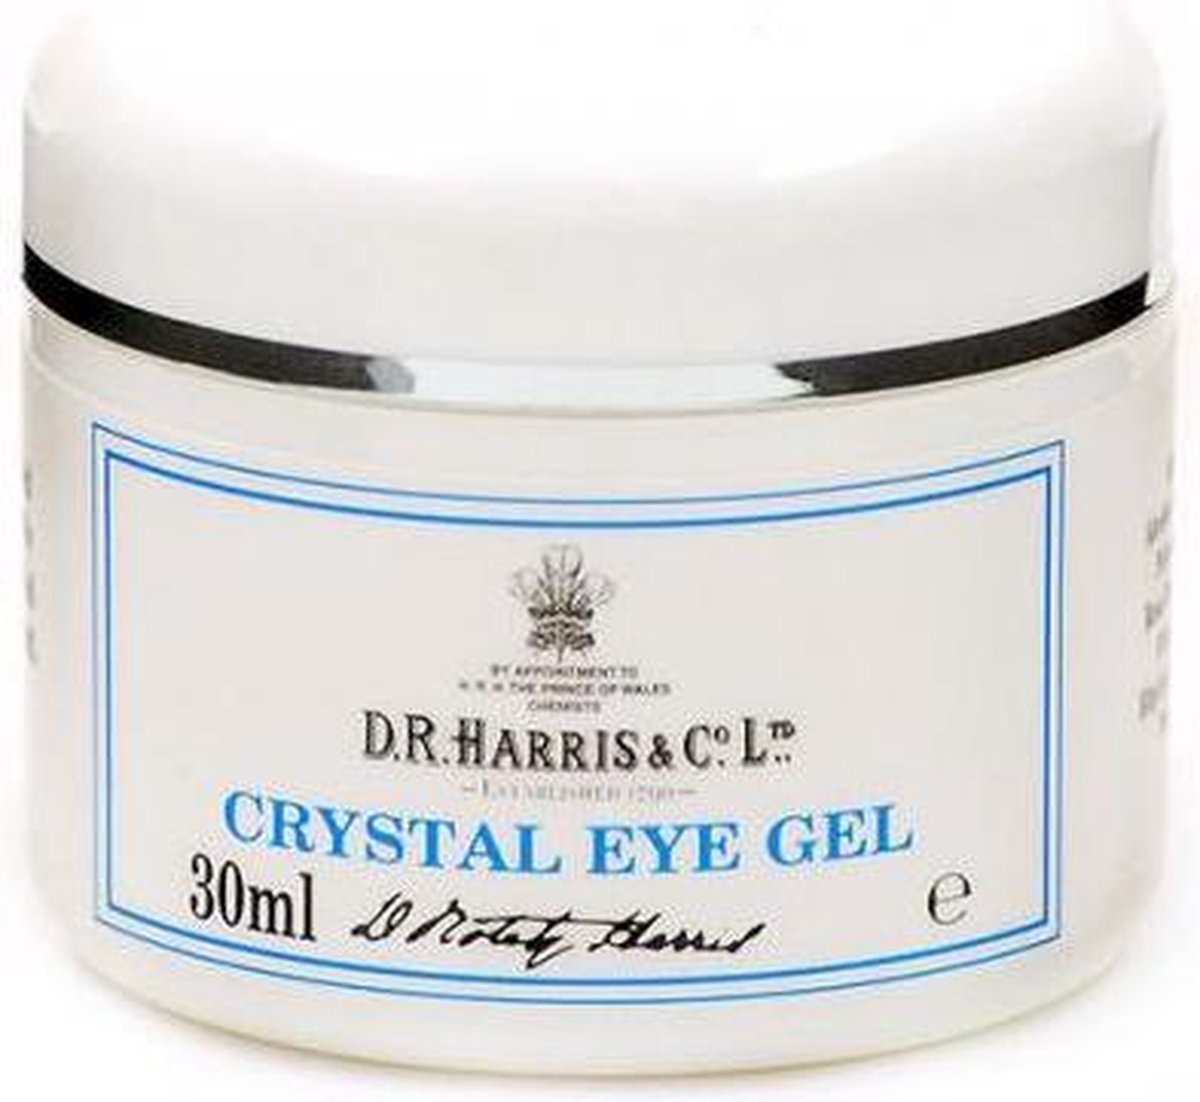 DR Harris Crystal eye gel 30ml